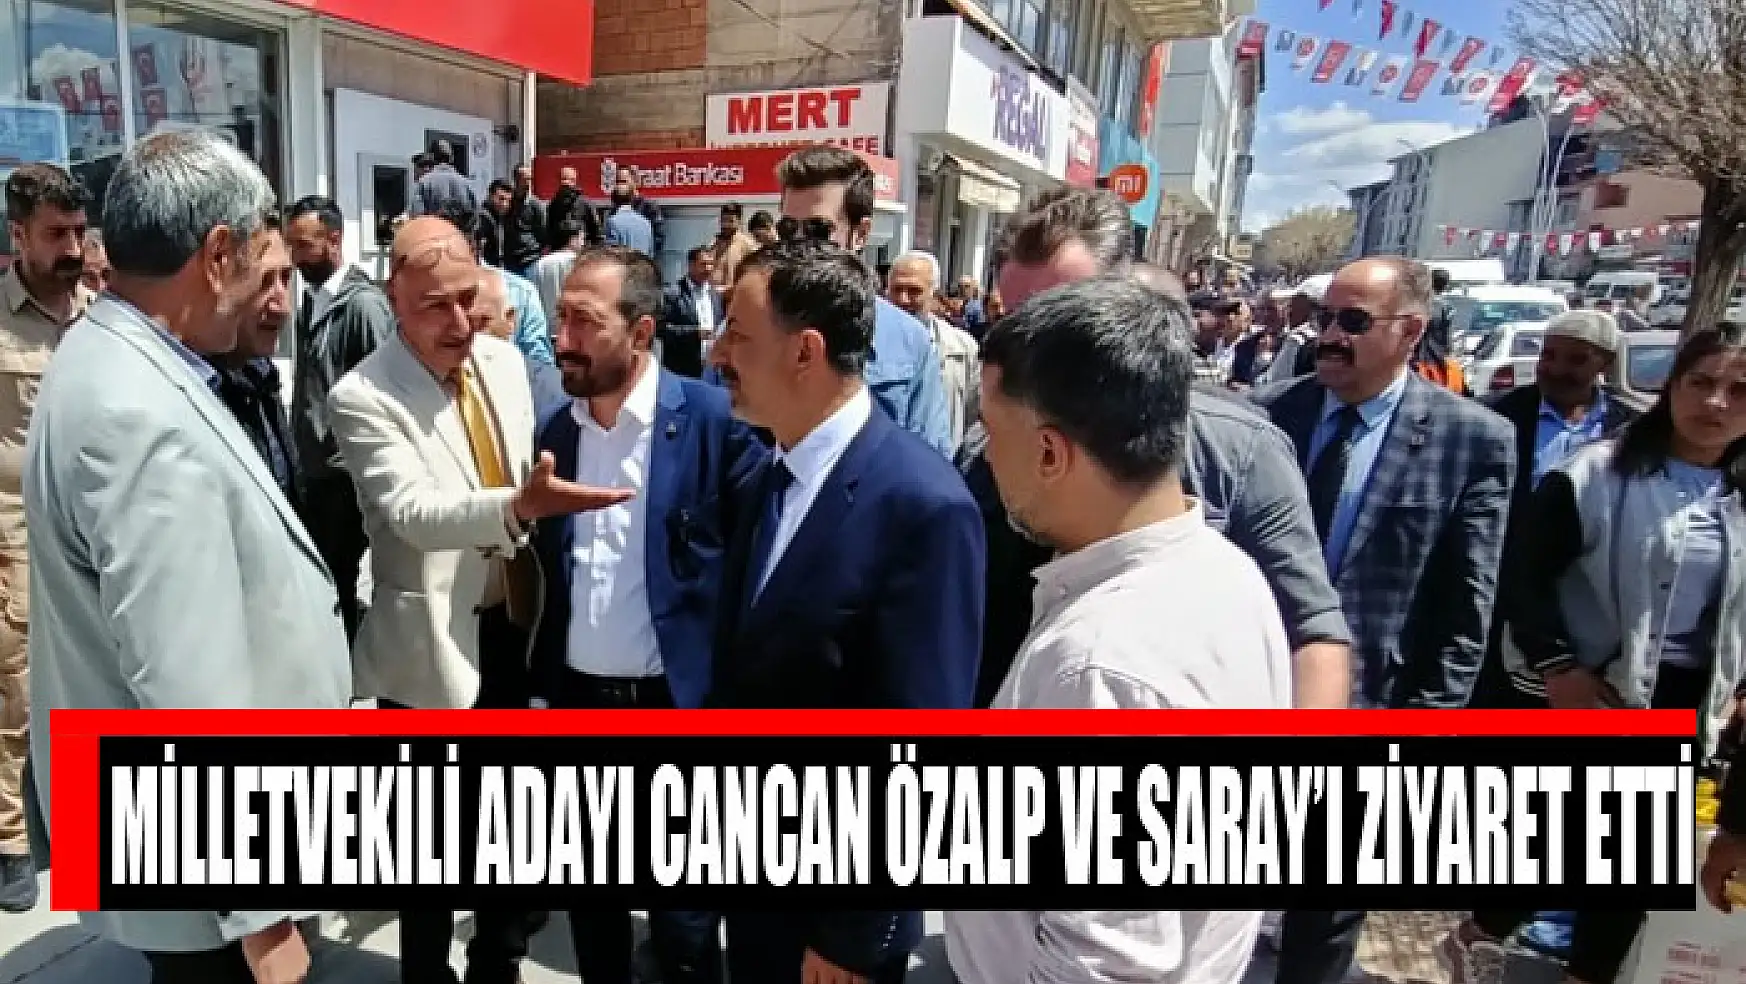 Milletvekili adayı Cancan Özalp ve Saray'ı ziyaret etti